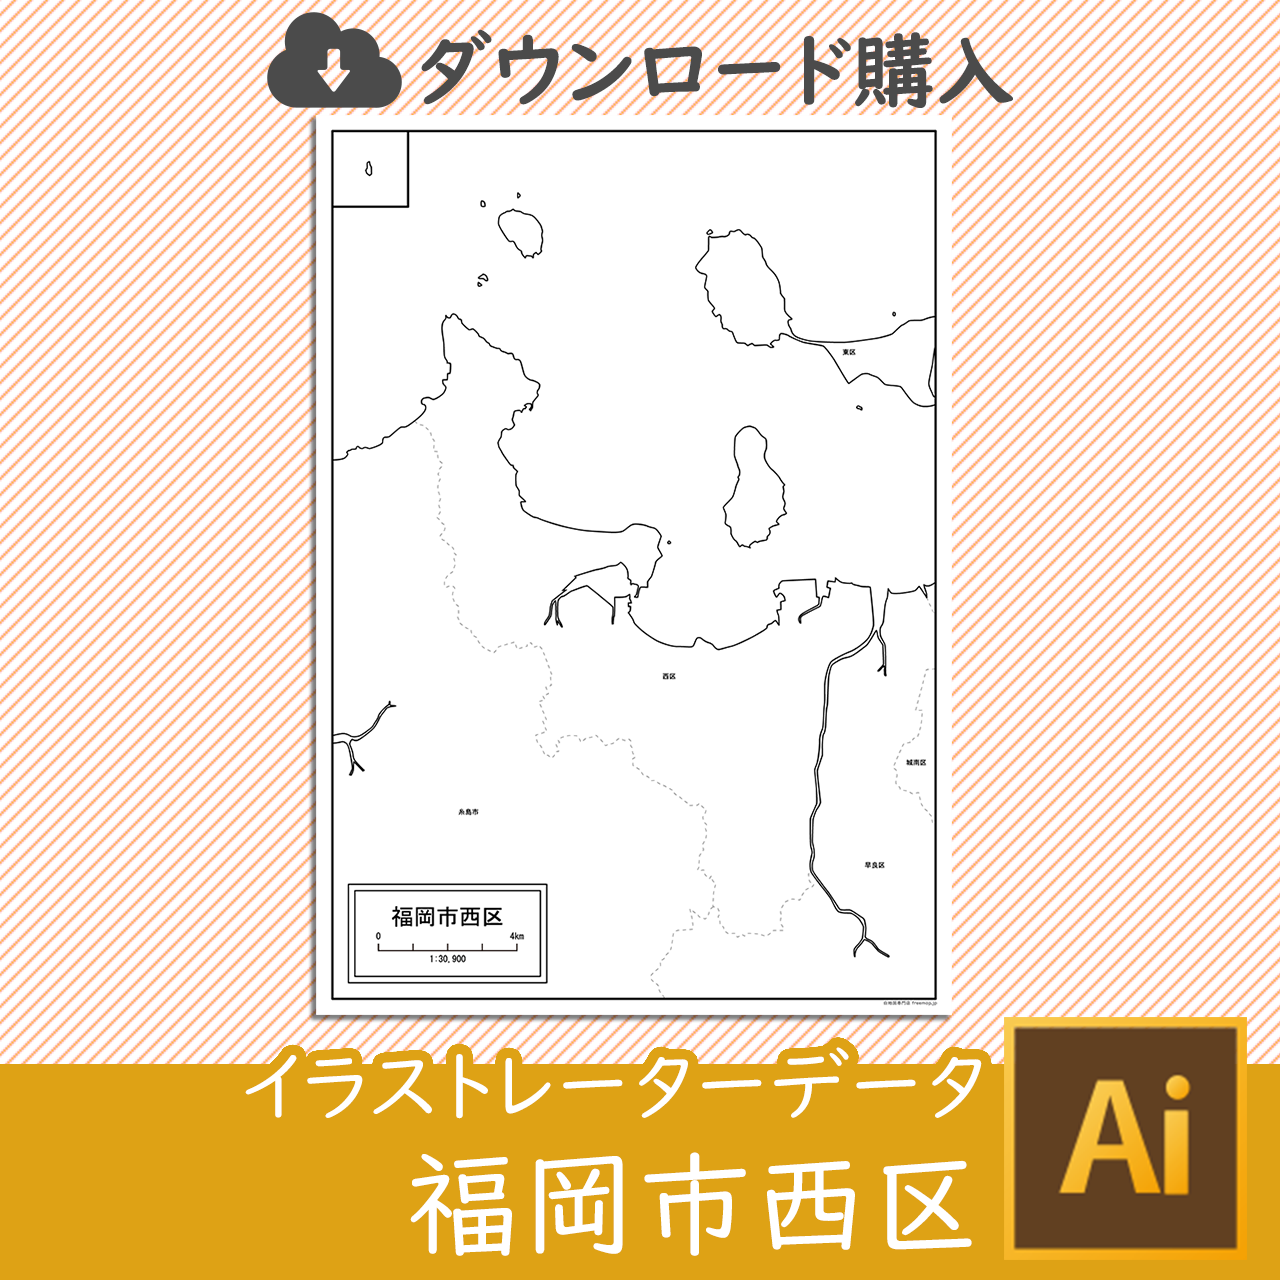 福岡市西区のaiデータのサムネイル画像